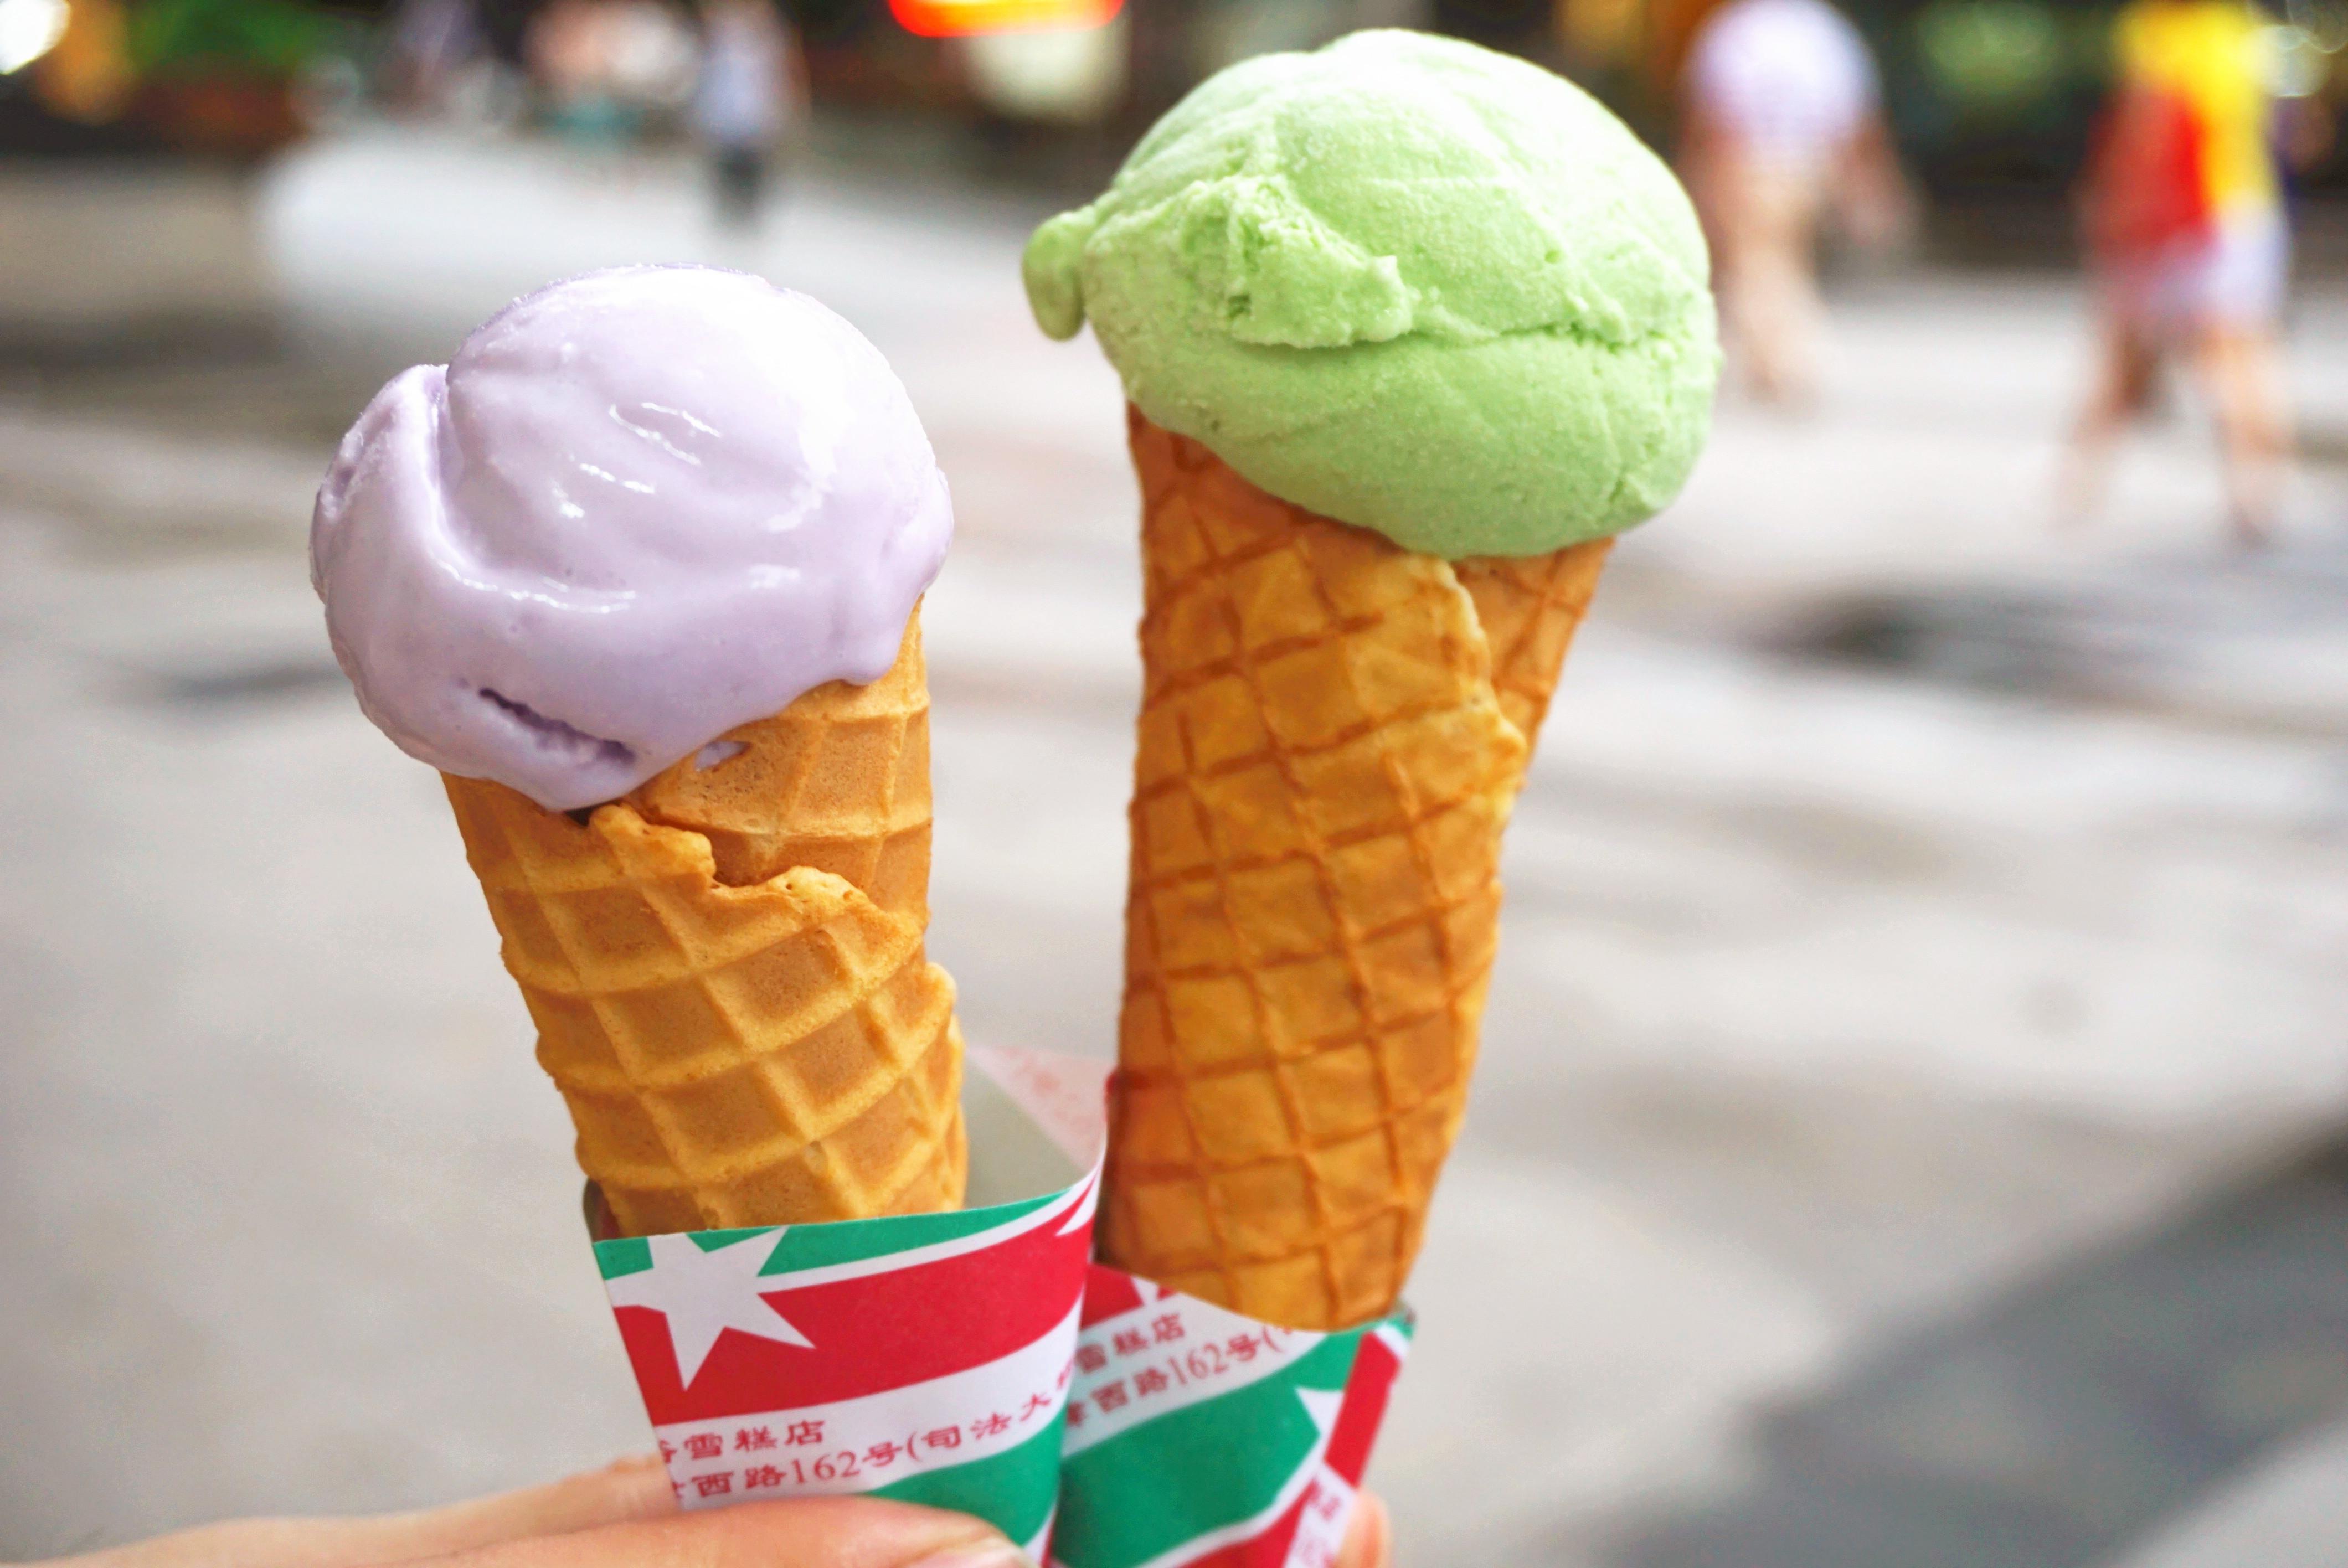 冰、冰淇淋、冰淇淋蛋筒 - 免费可商用图片 - cc0.cn